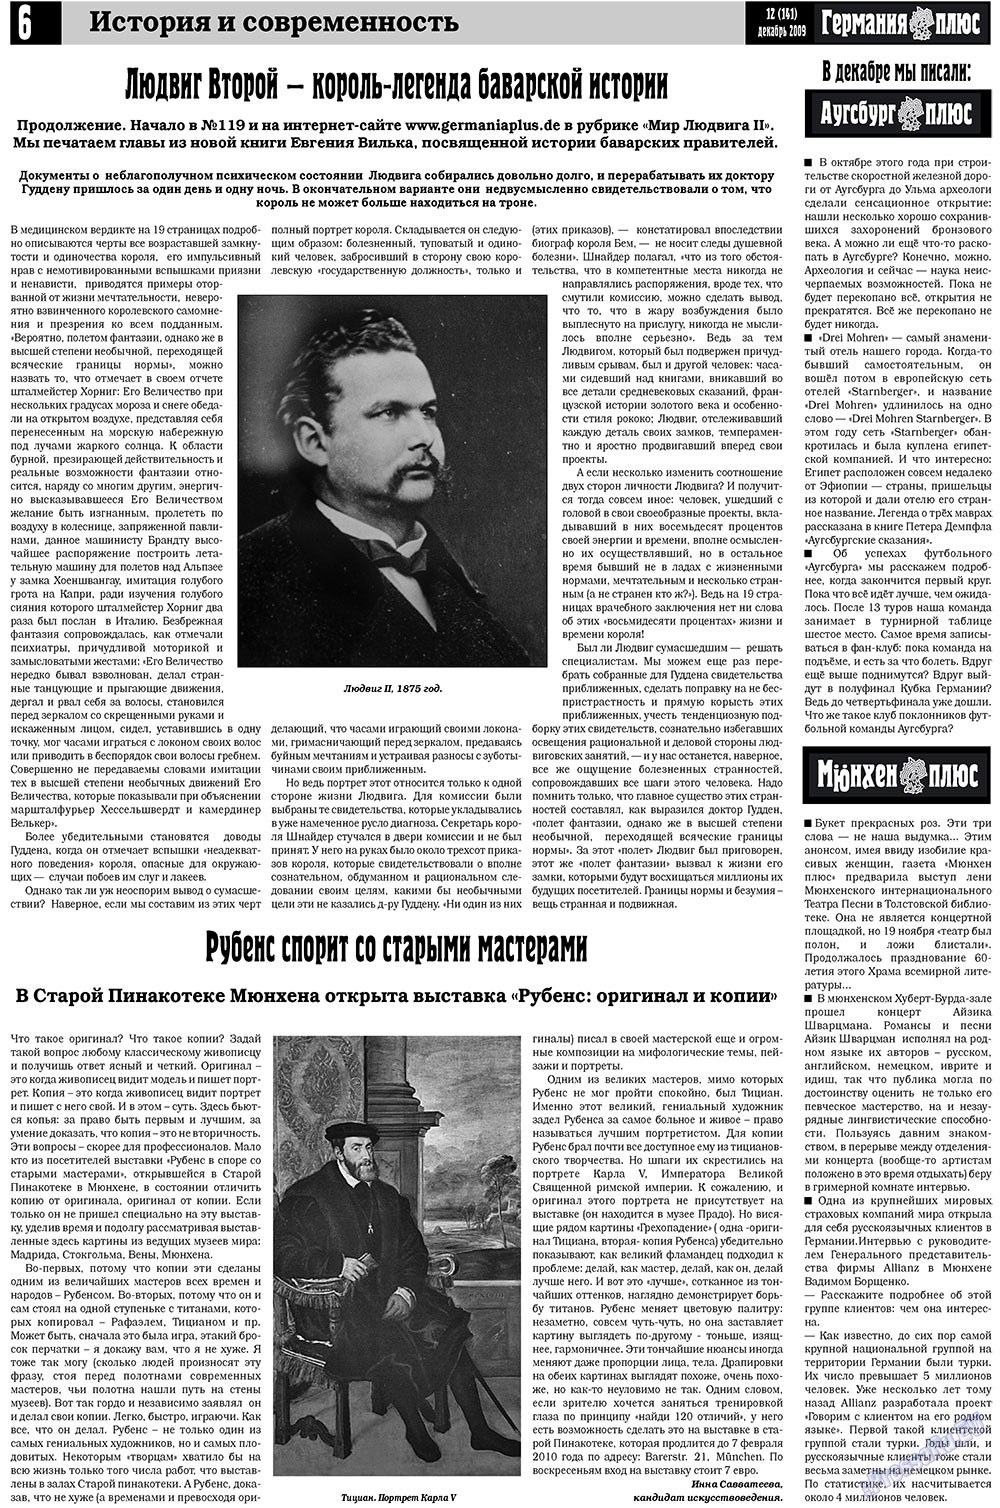 Германия плюс, газета. 2009 №12 стр.6